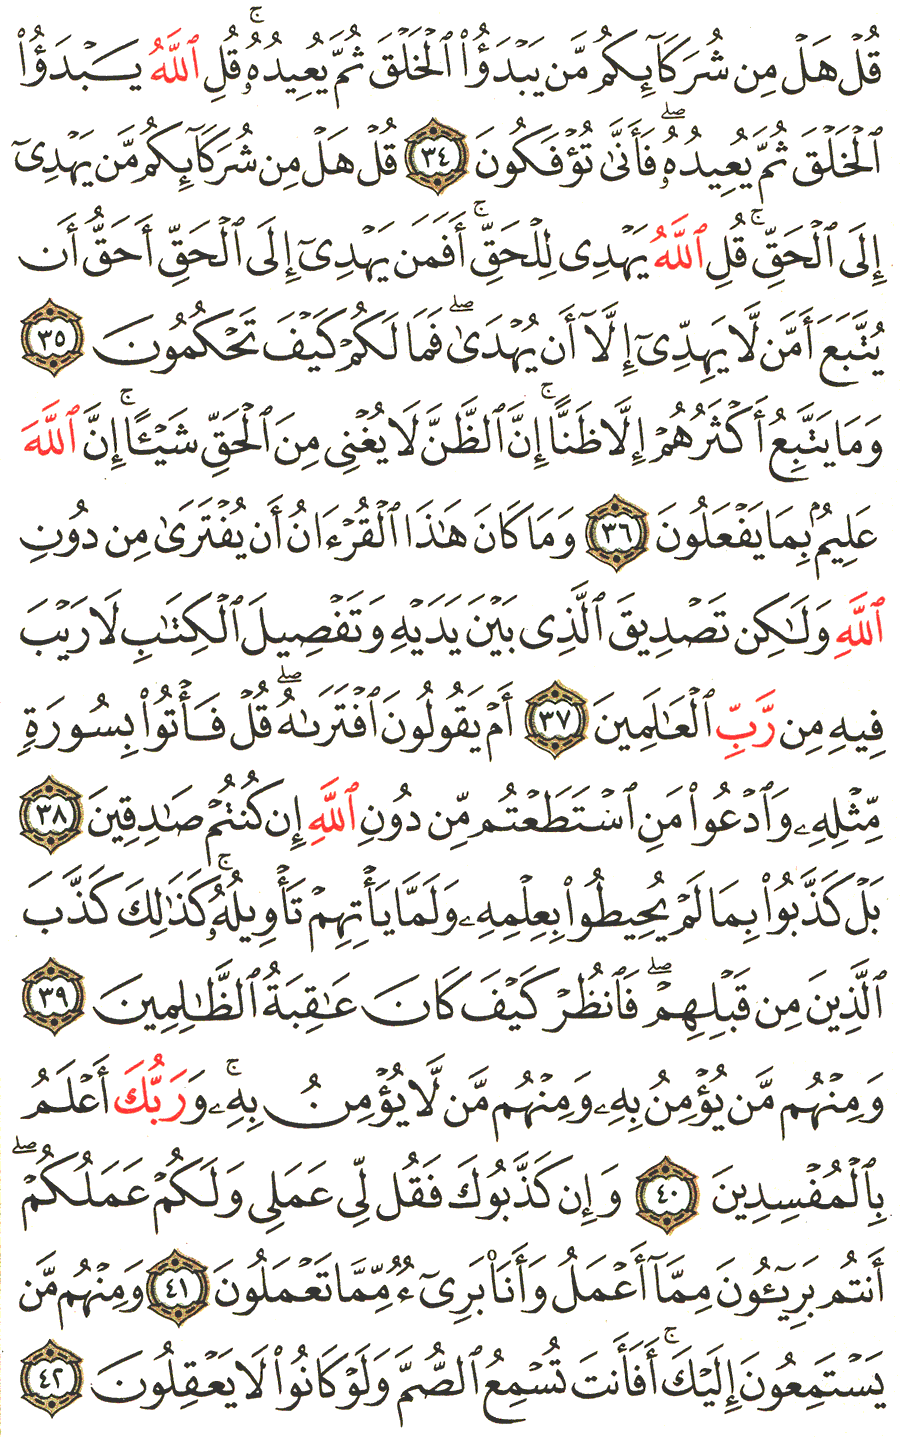 الصفحة رقم 213  من القرآن الكريم مكتوبة من المصحف